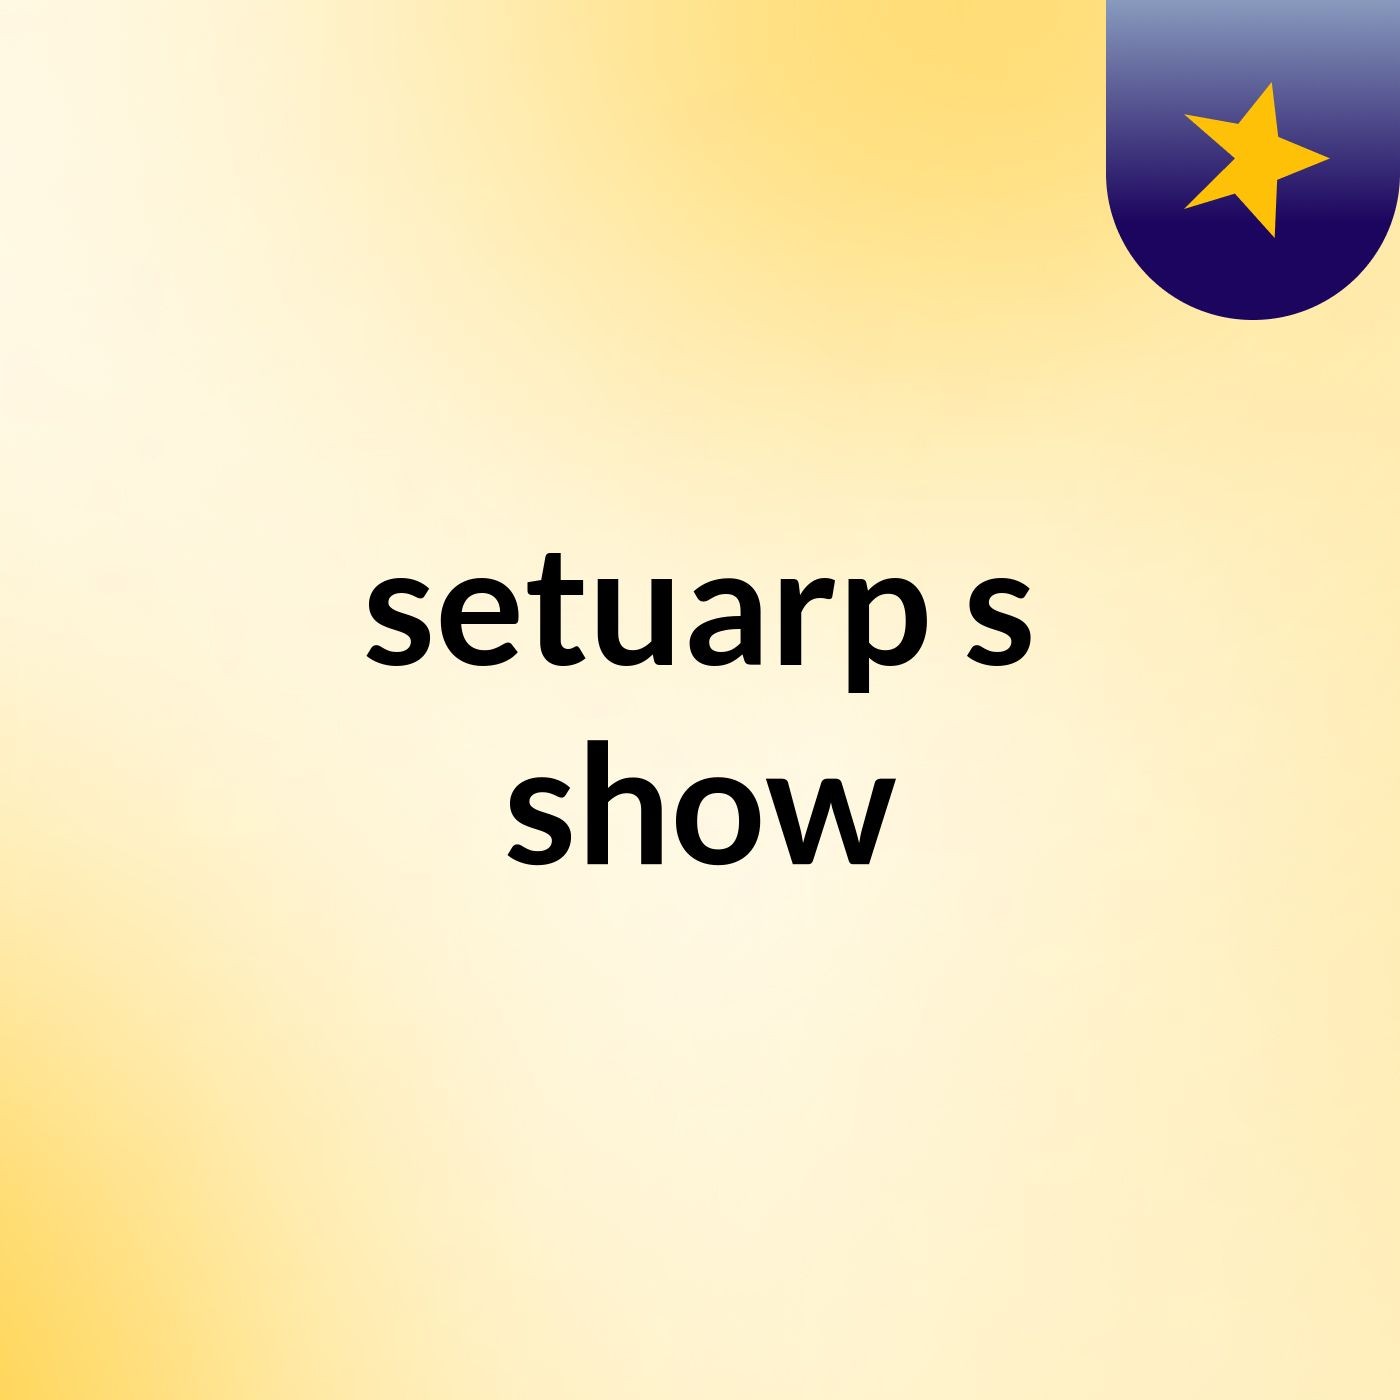 setuarp's show